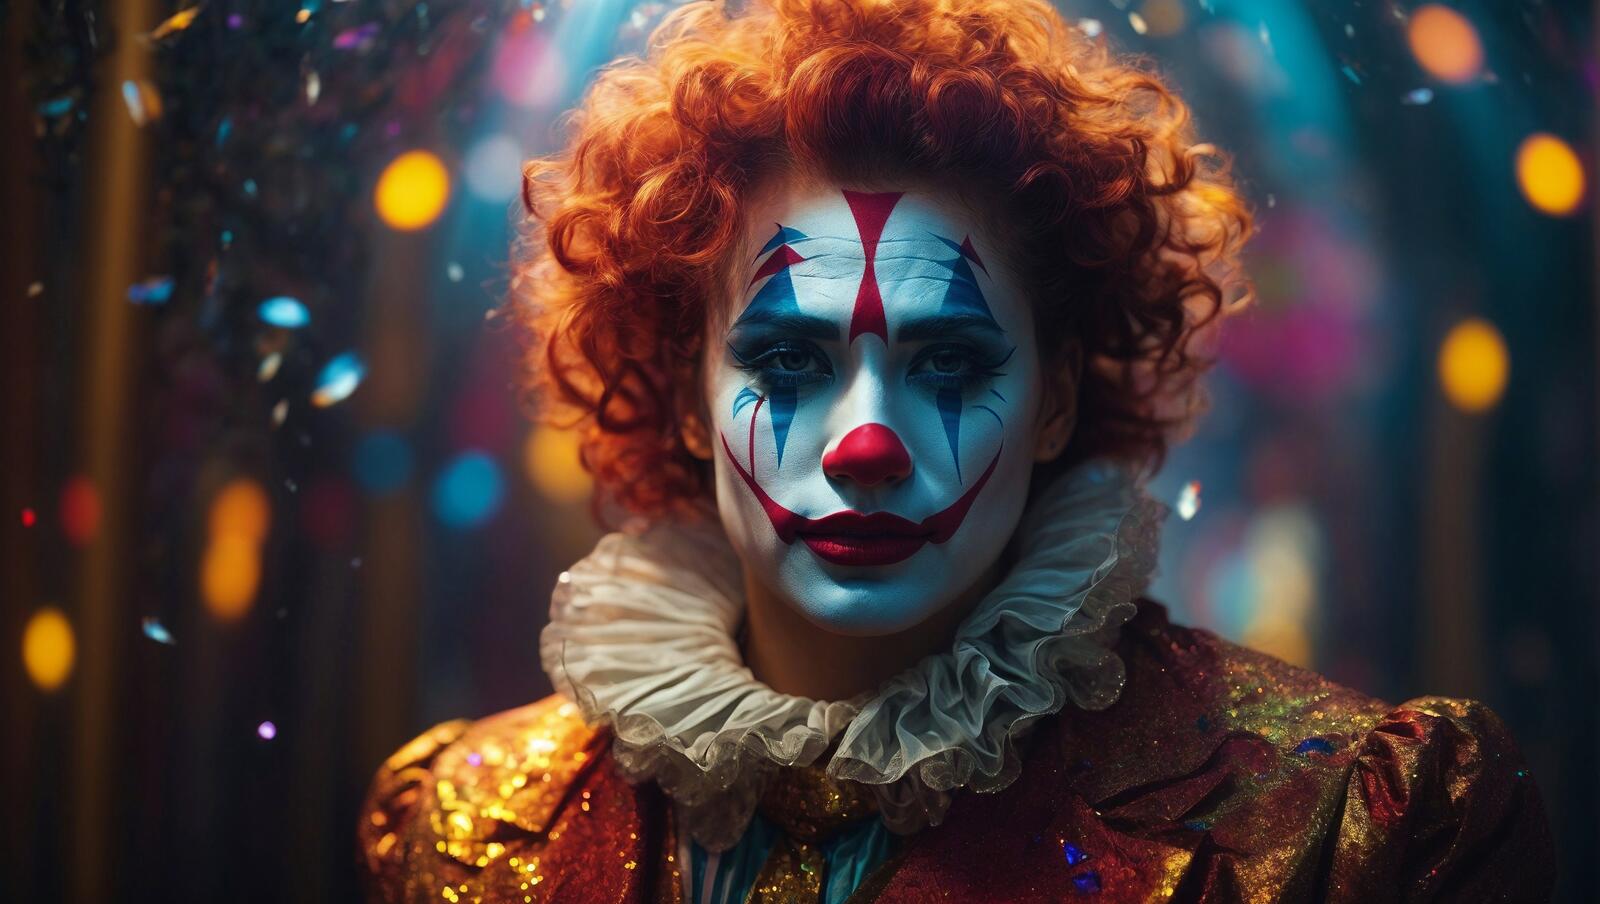 Бесплатное фото Изображение клоуна с клоунским гримом